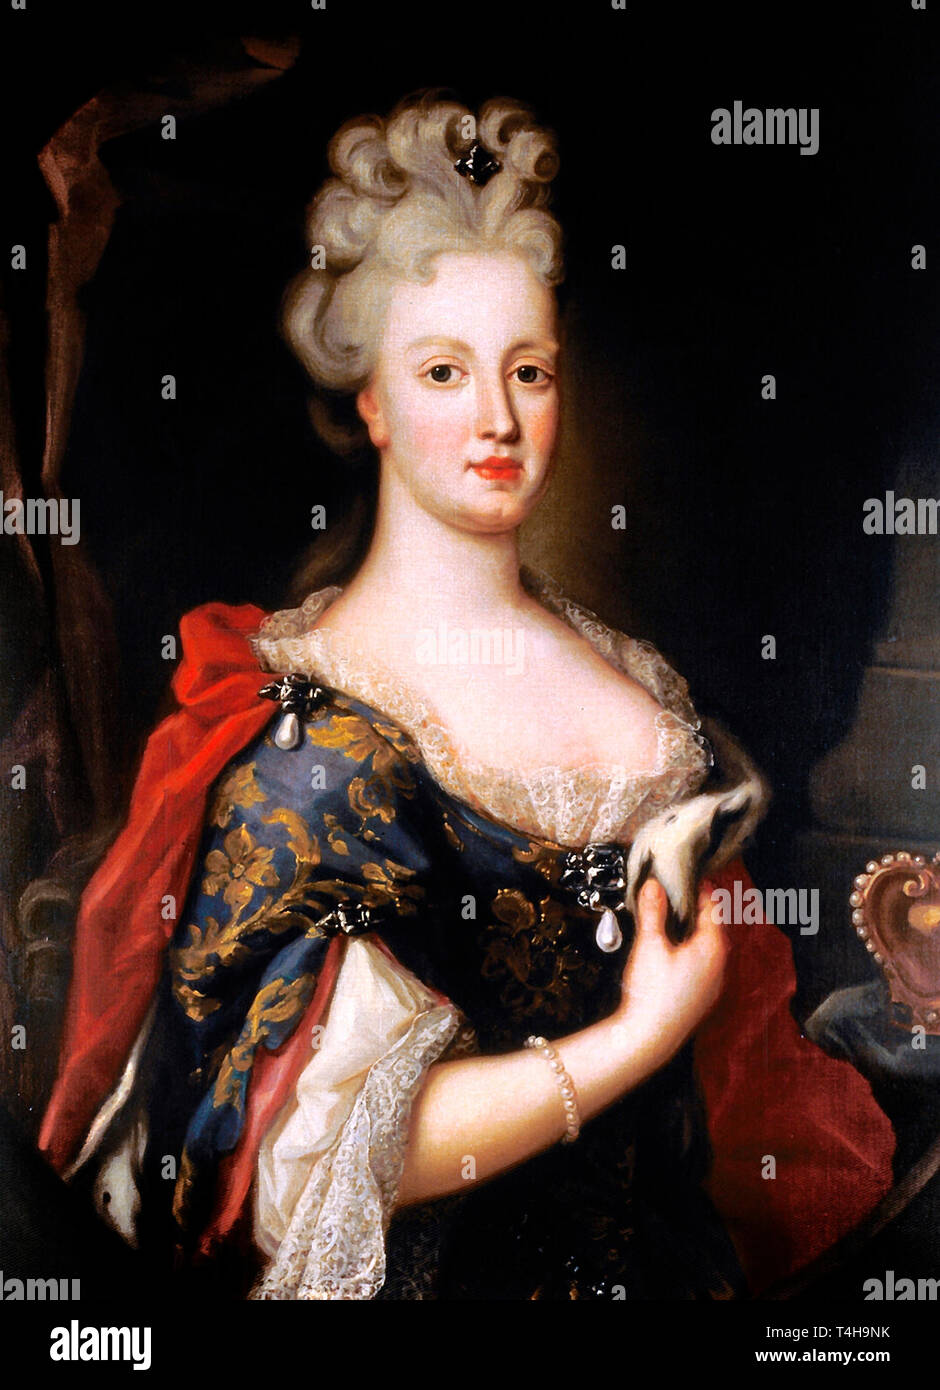 Königin Maria Anna von Österreich (1683-1754), geborene Maria Anna von Osterreich, Königin von Johannes V. von Portugal. Zurückzuführen auf Pompeo Batoni Stockfoto